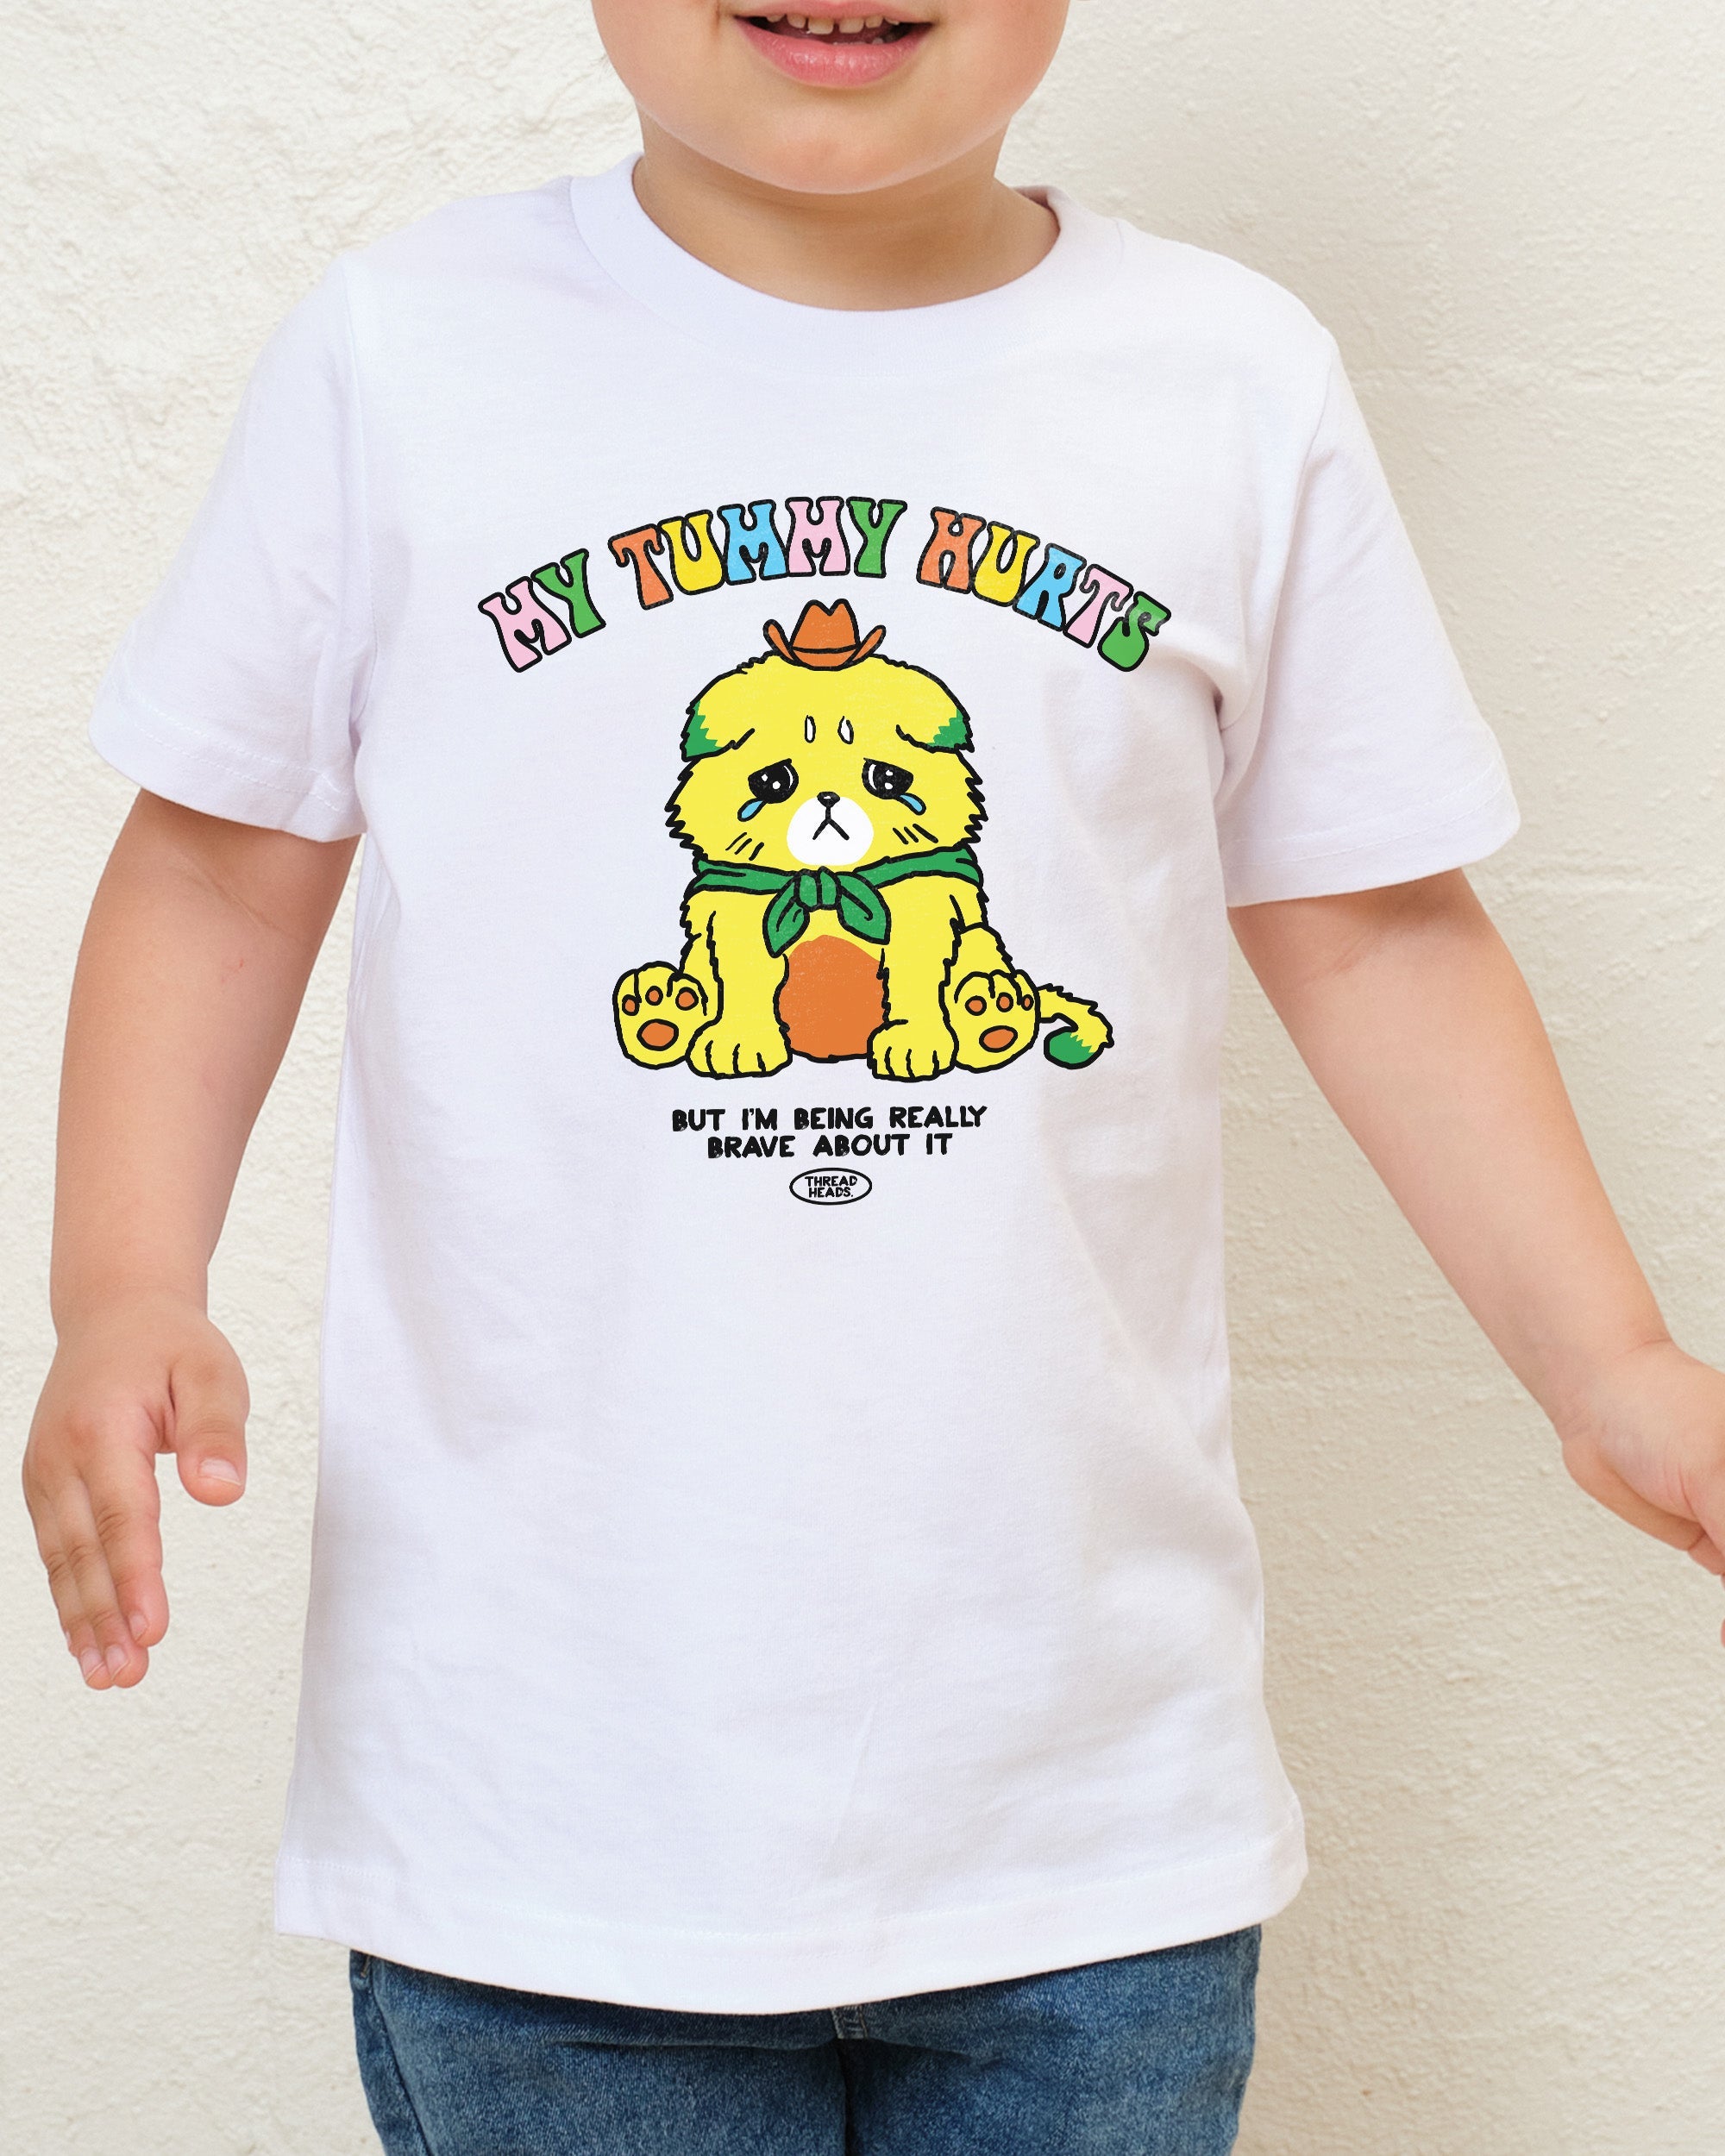 My Tummy Hurts Kids T-Shirt Australia Online White